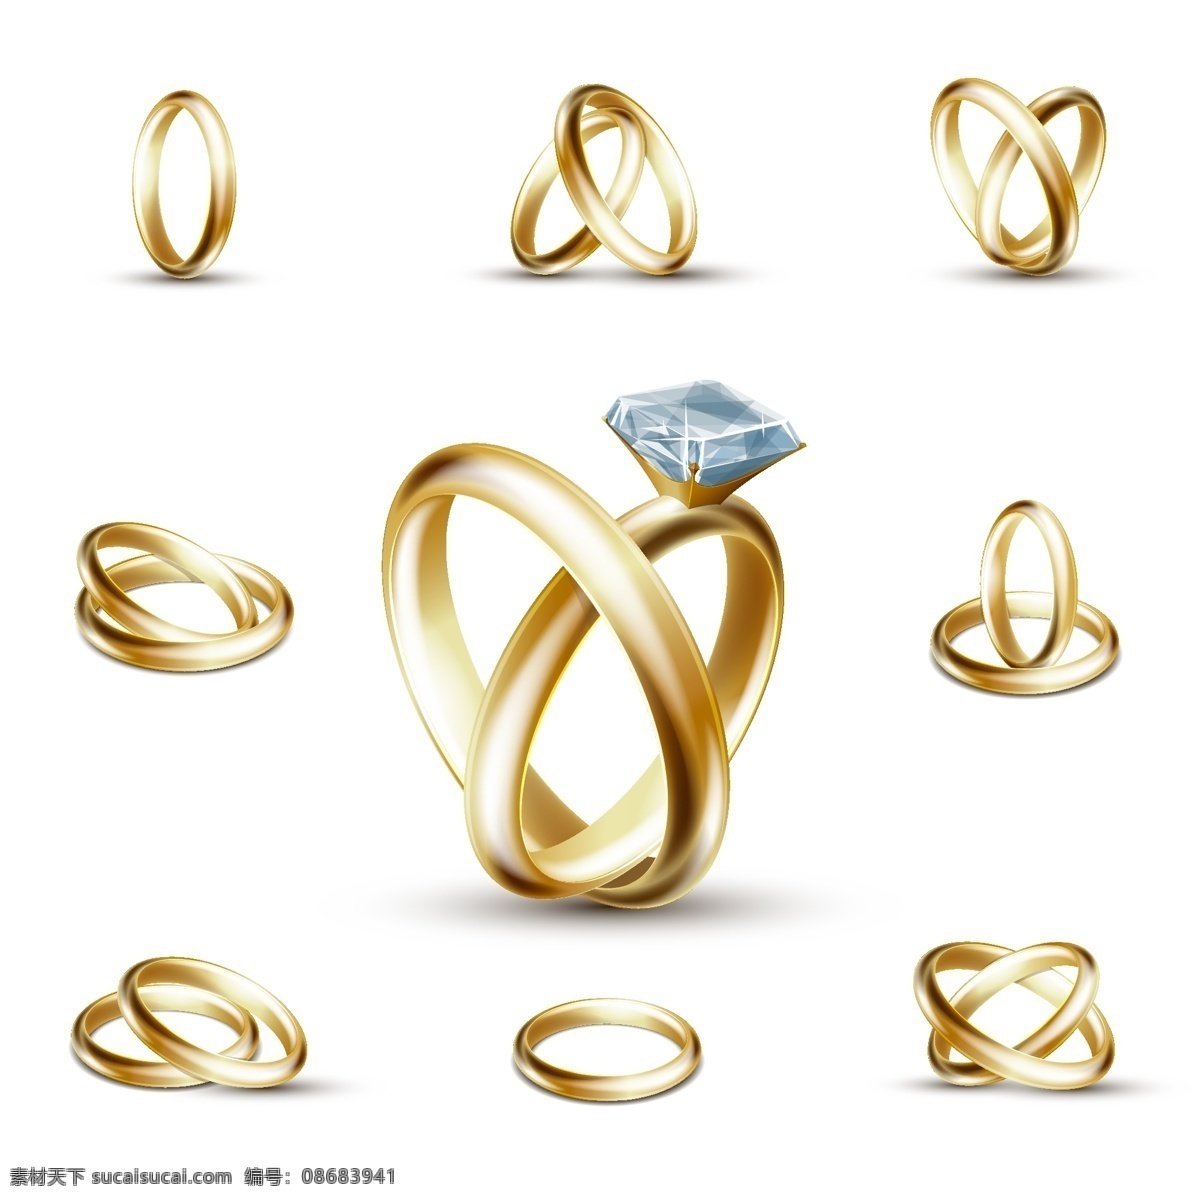 黄金 钻戒 元素 插画 珠宝 戒指 钻石 对戒 爱情信物